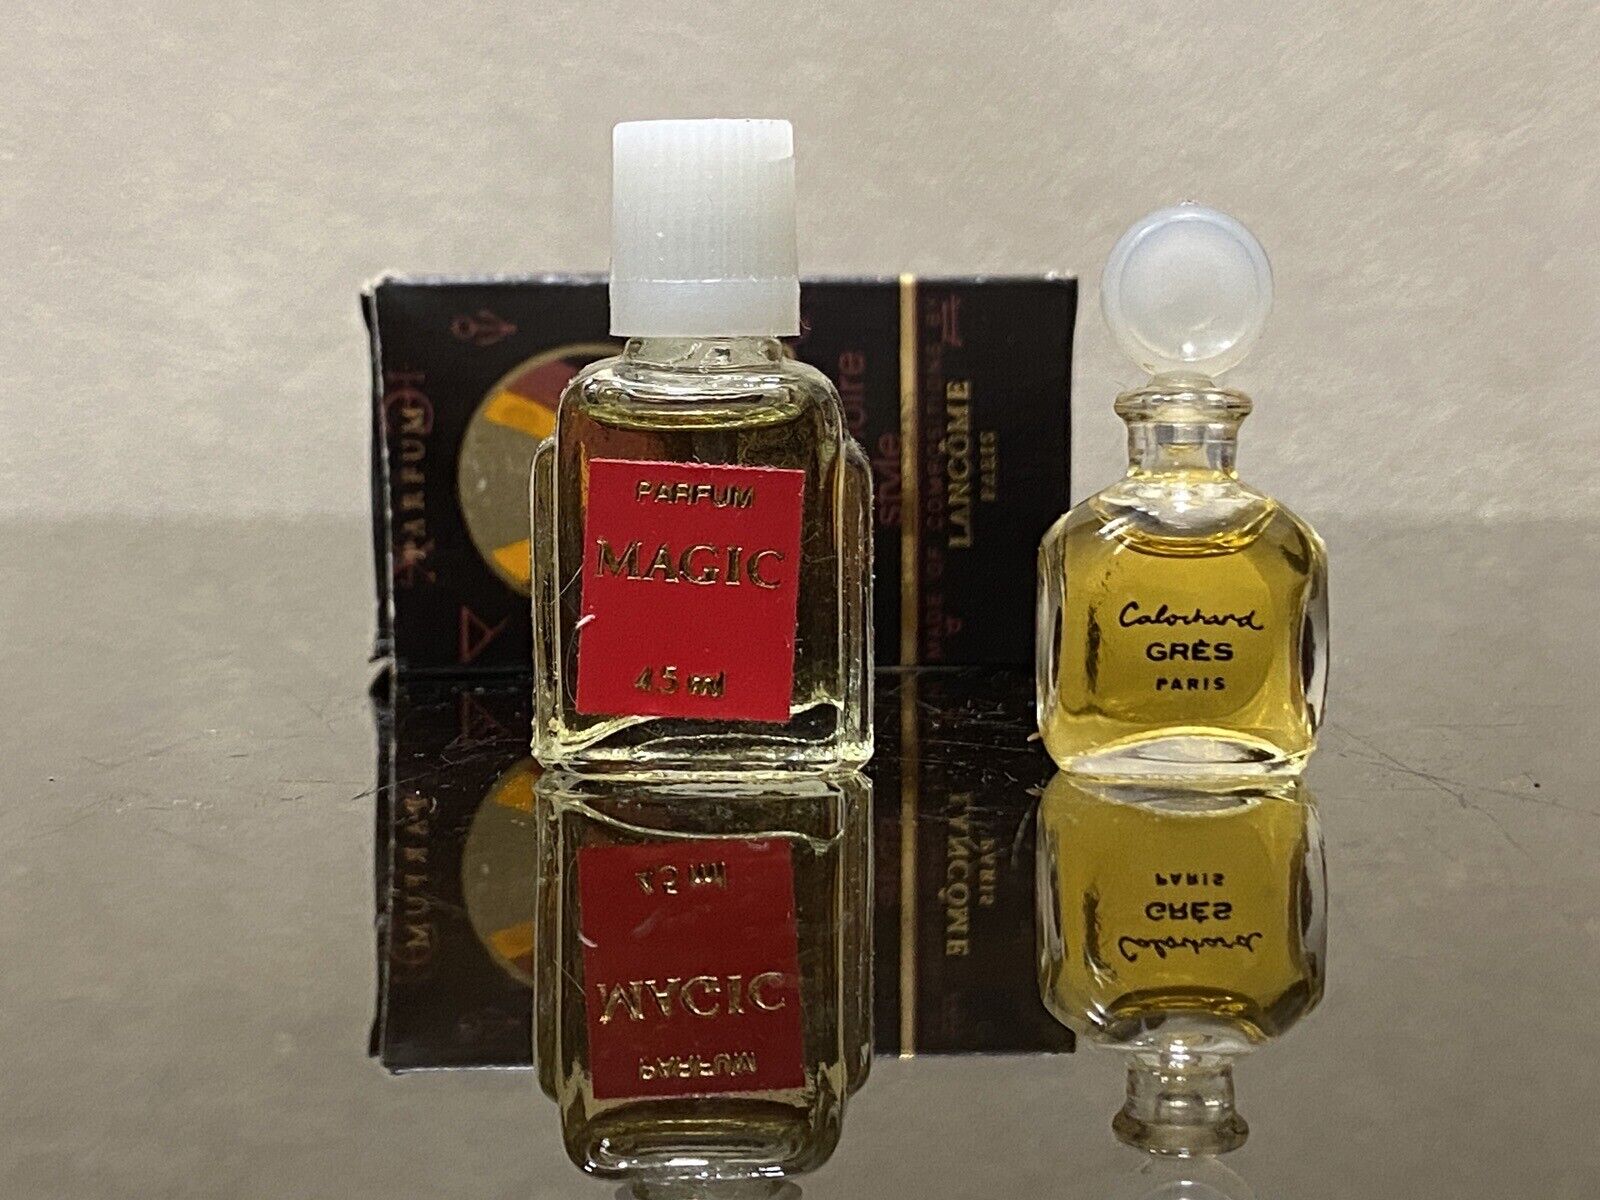 2 pcs Vintage Parfums MAGIC Lancome Paris 4.5 ml / Cabochard GRES Paris